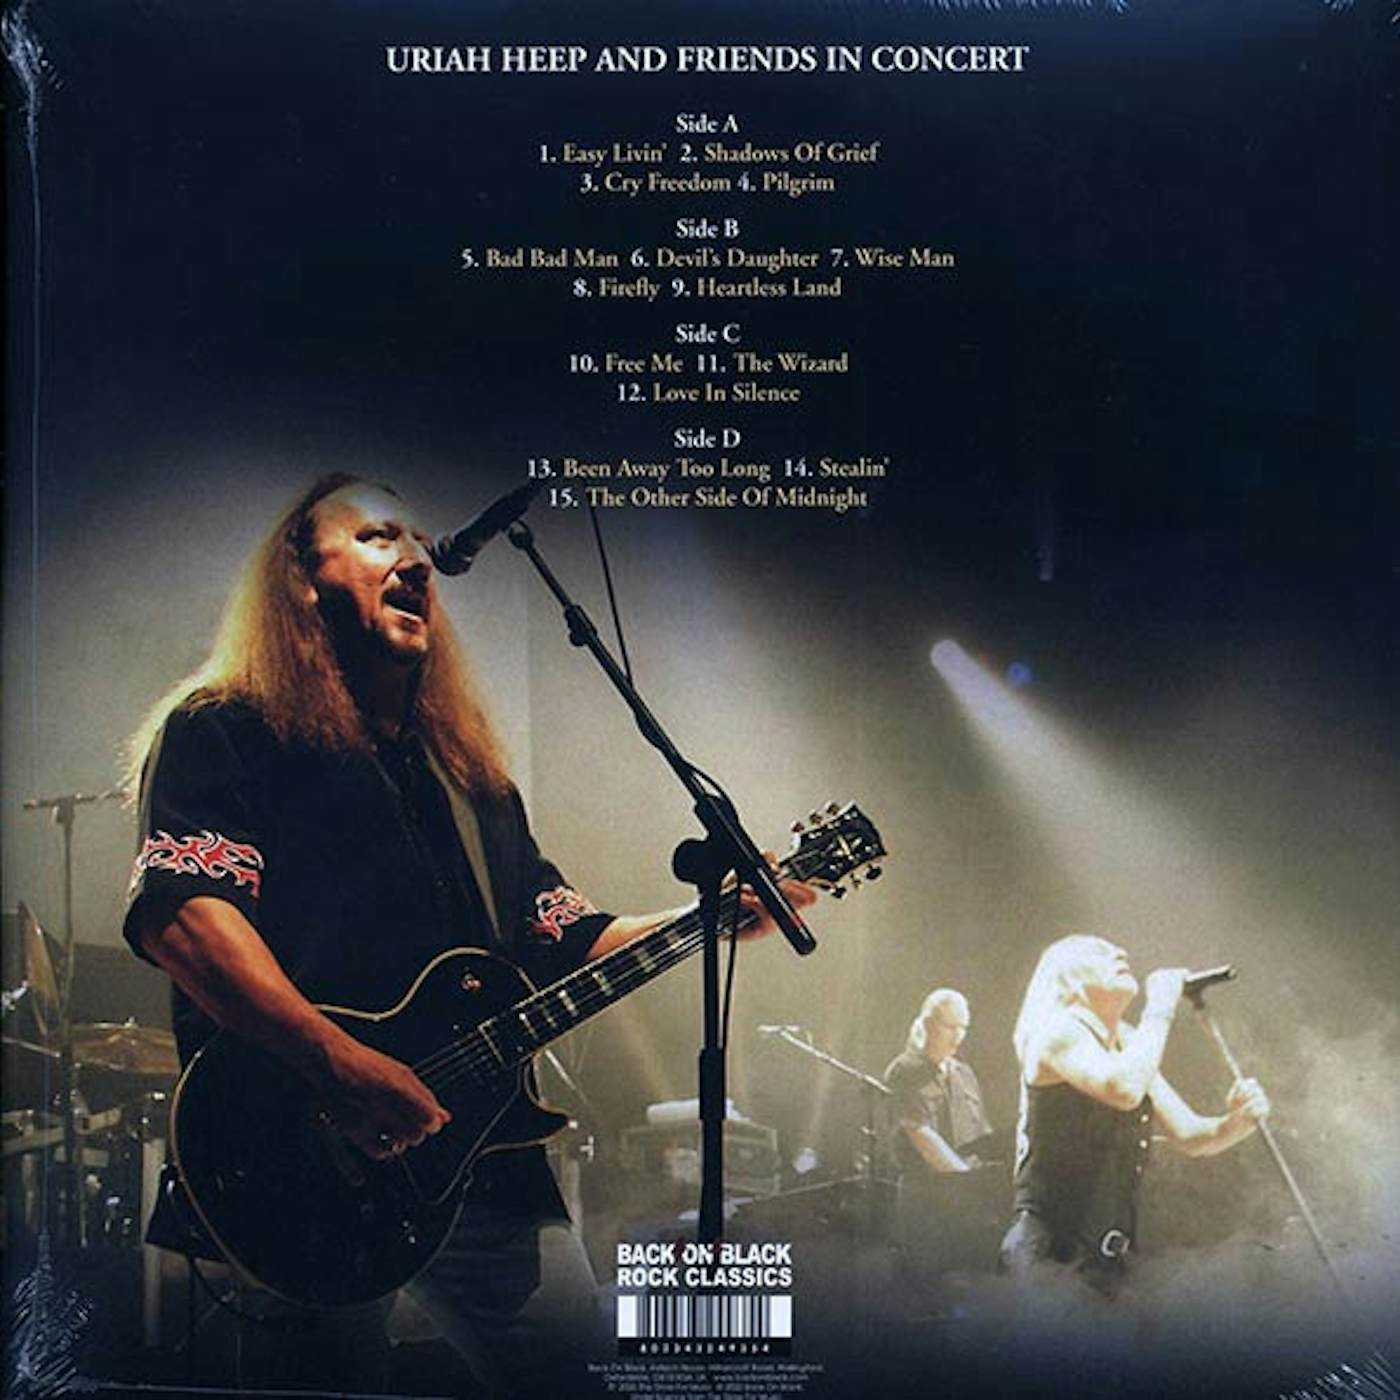 Uriah Heep  LP -  Magic Night (2xLP) (Vinyl)